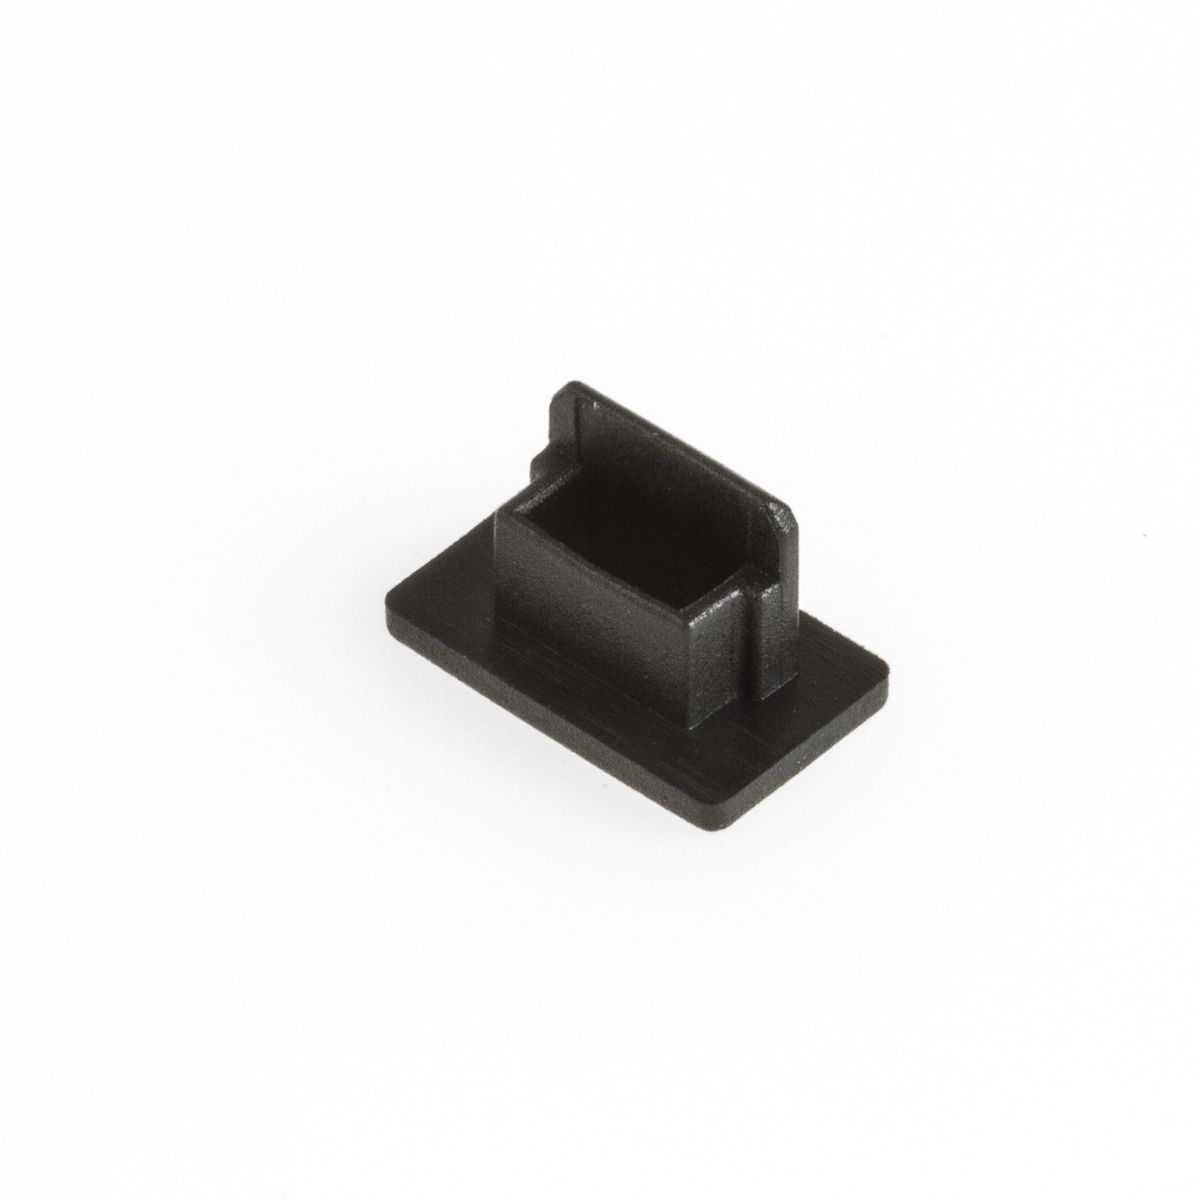 Protection contre poussière pour USB 2.0 Mini B femelle (50 capuchons)